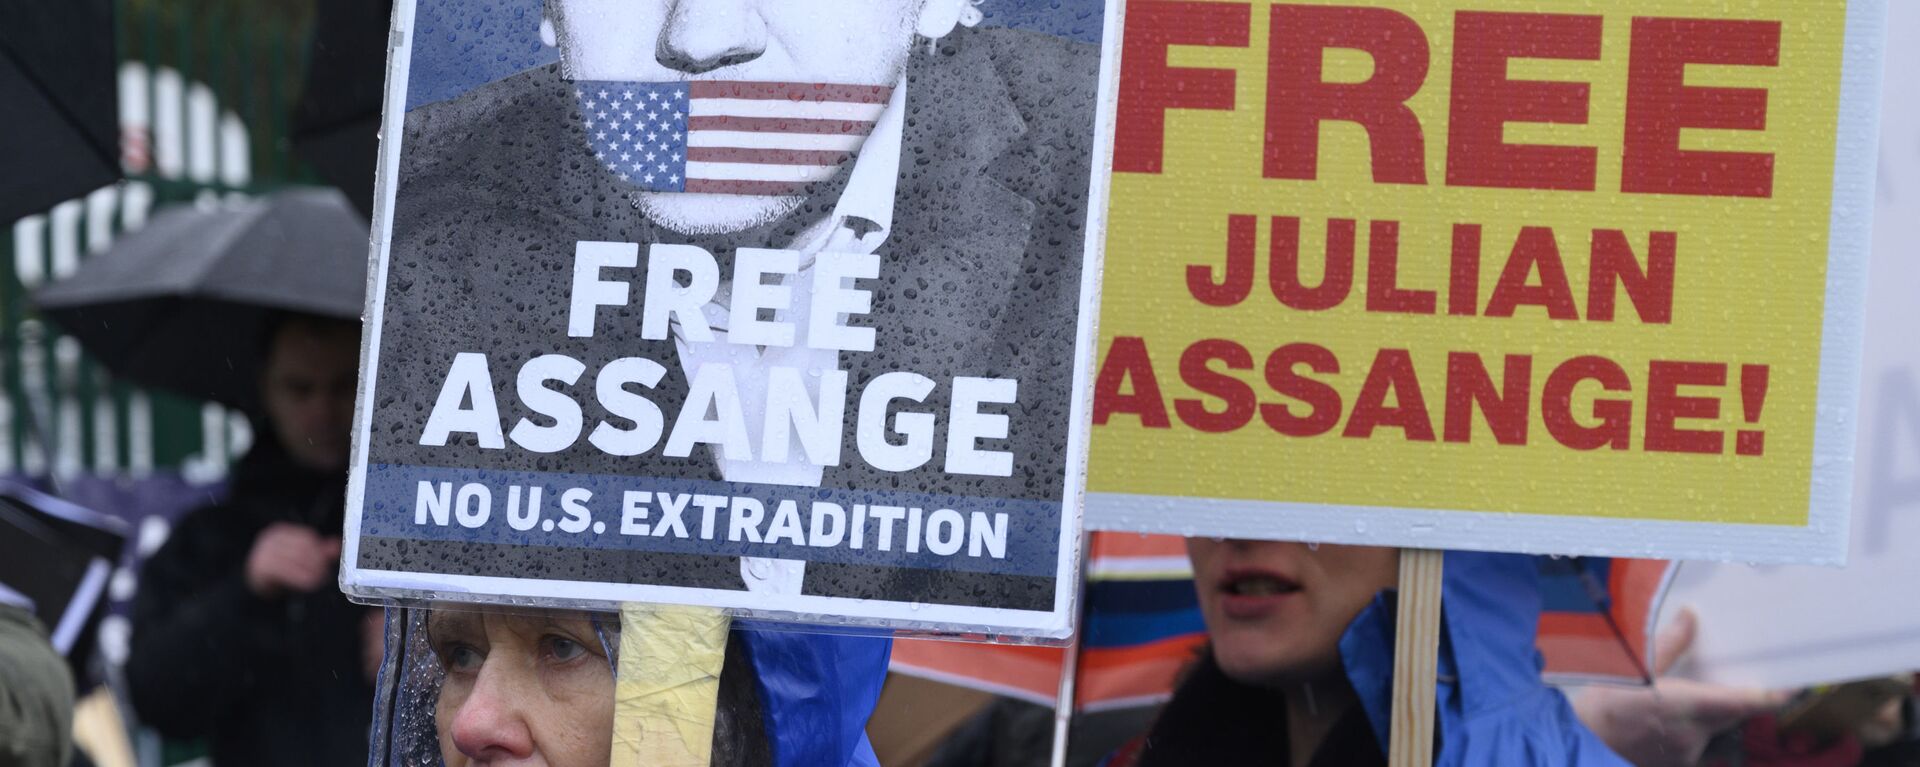 Una protesta contra la extradición de Julian Assange en Londres - Sputnik Mundo, 1920, 05.01.2021